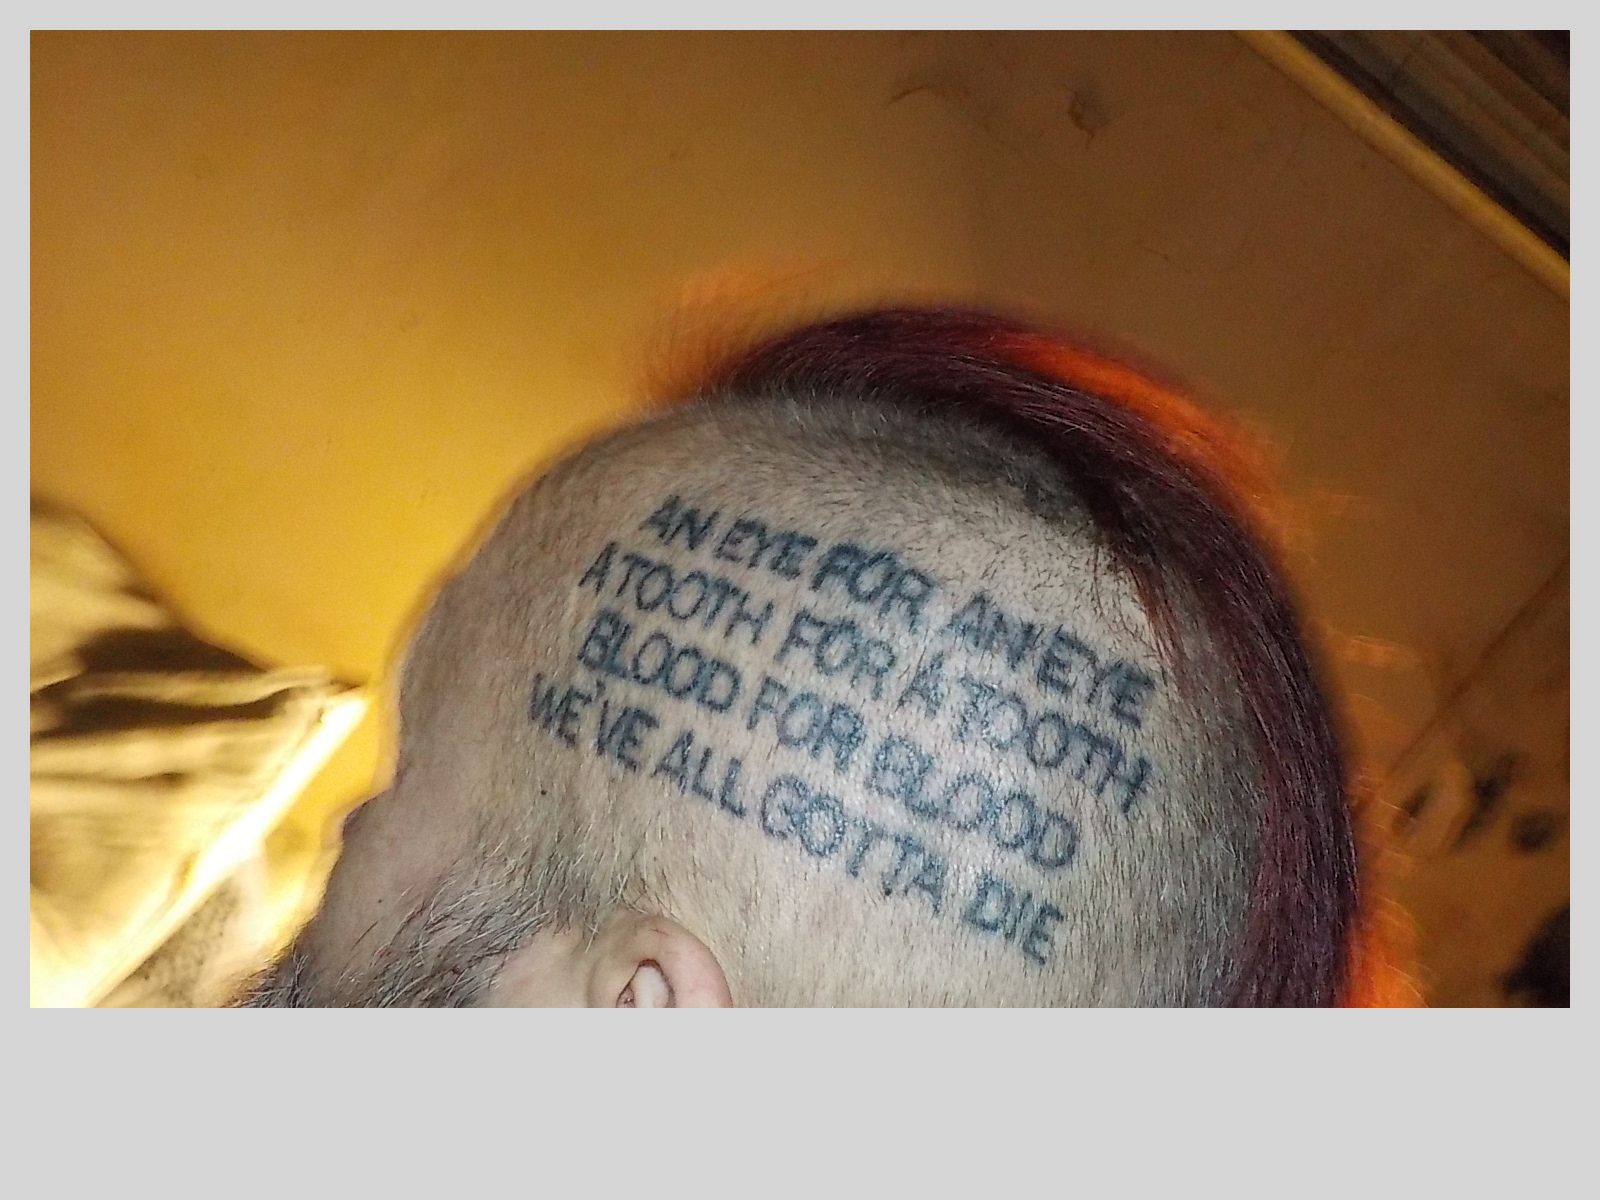 tattoo left side of head - Five Finger Death Punch Photo (43161404) - Fanpop